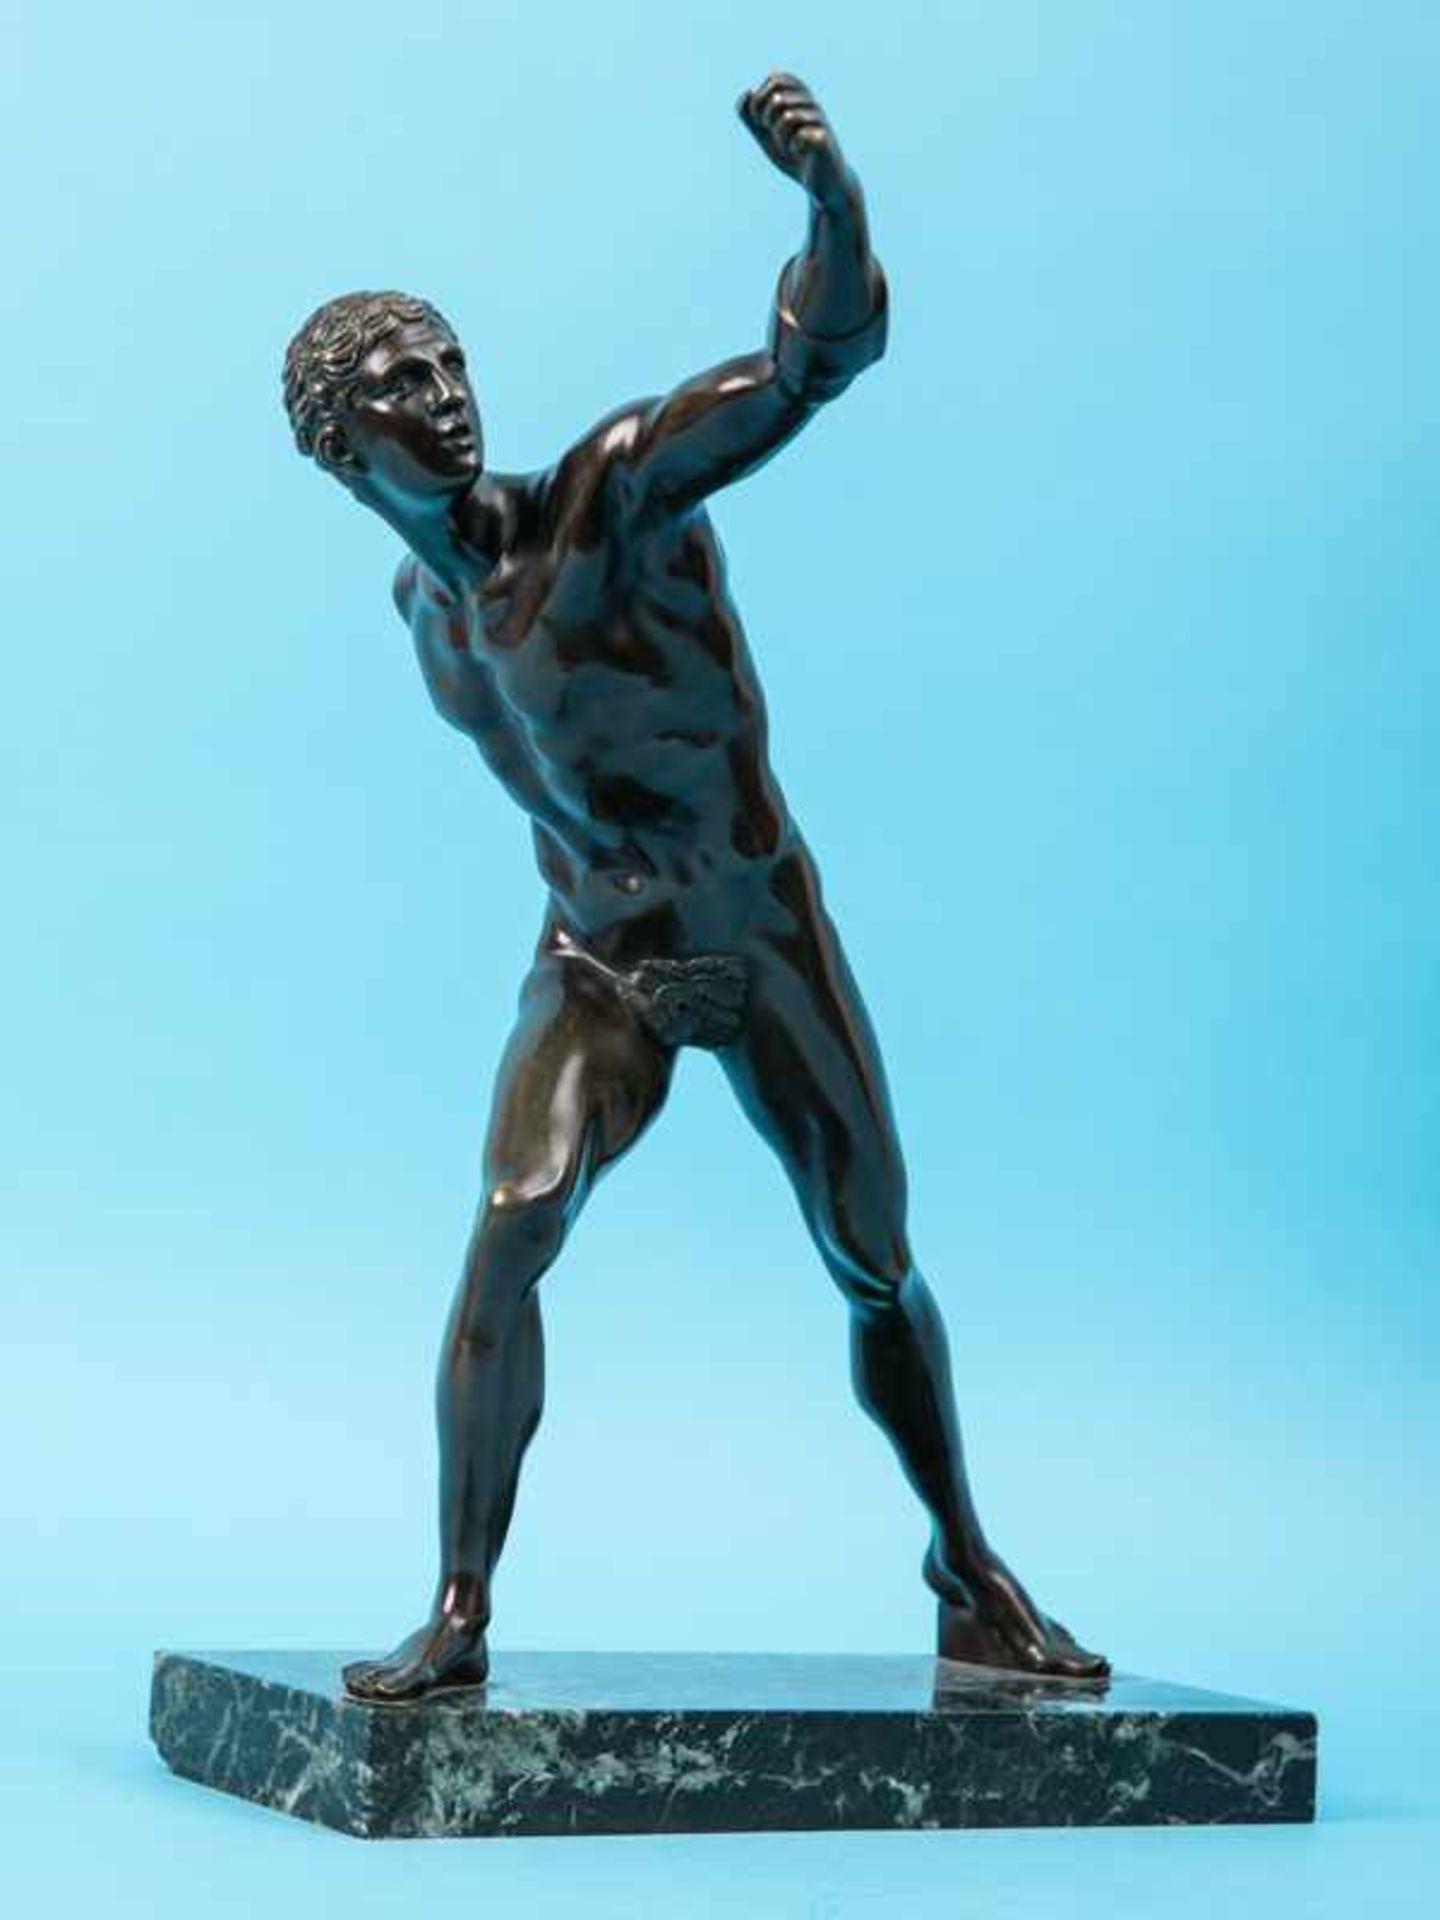 Figurenplastik "Staffelläufer", um 1900. Bronze mit goldbrauner Patinierung, montiert auf